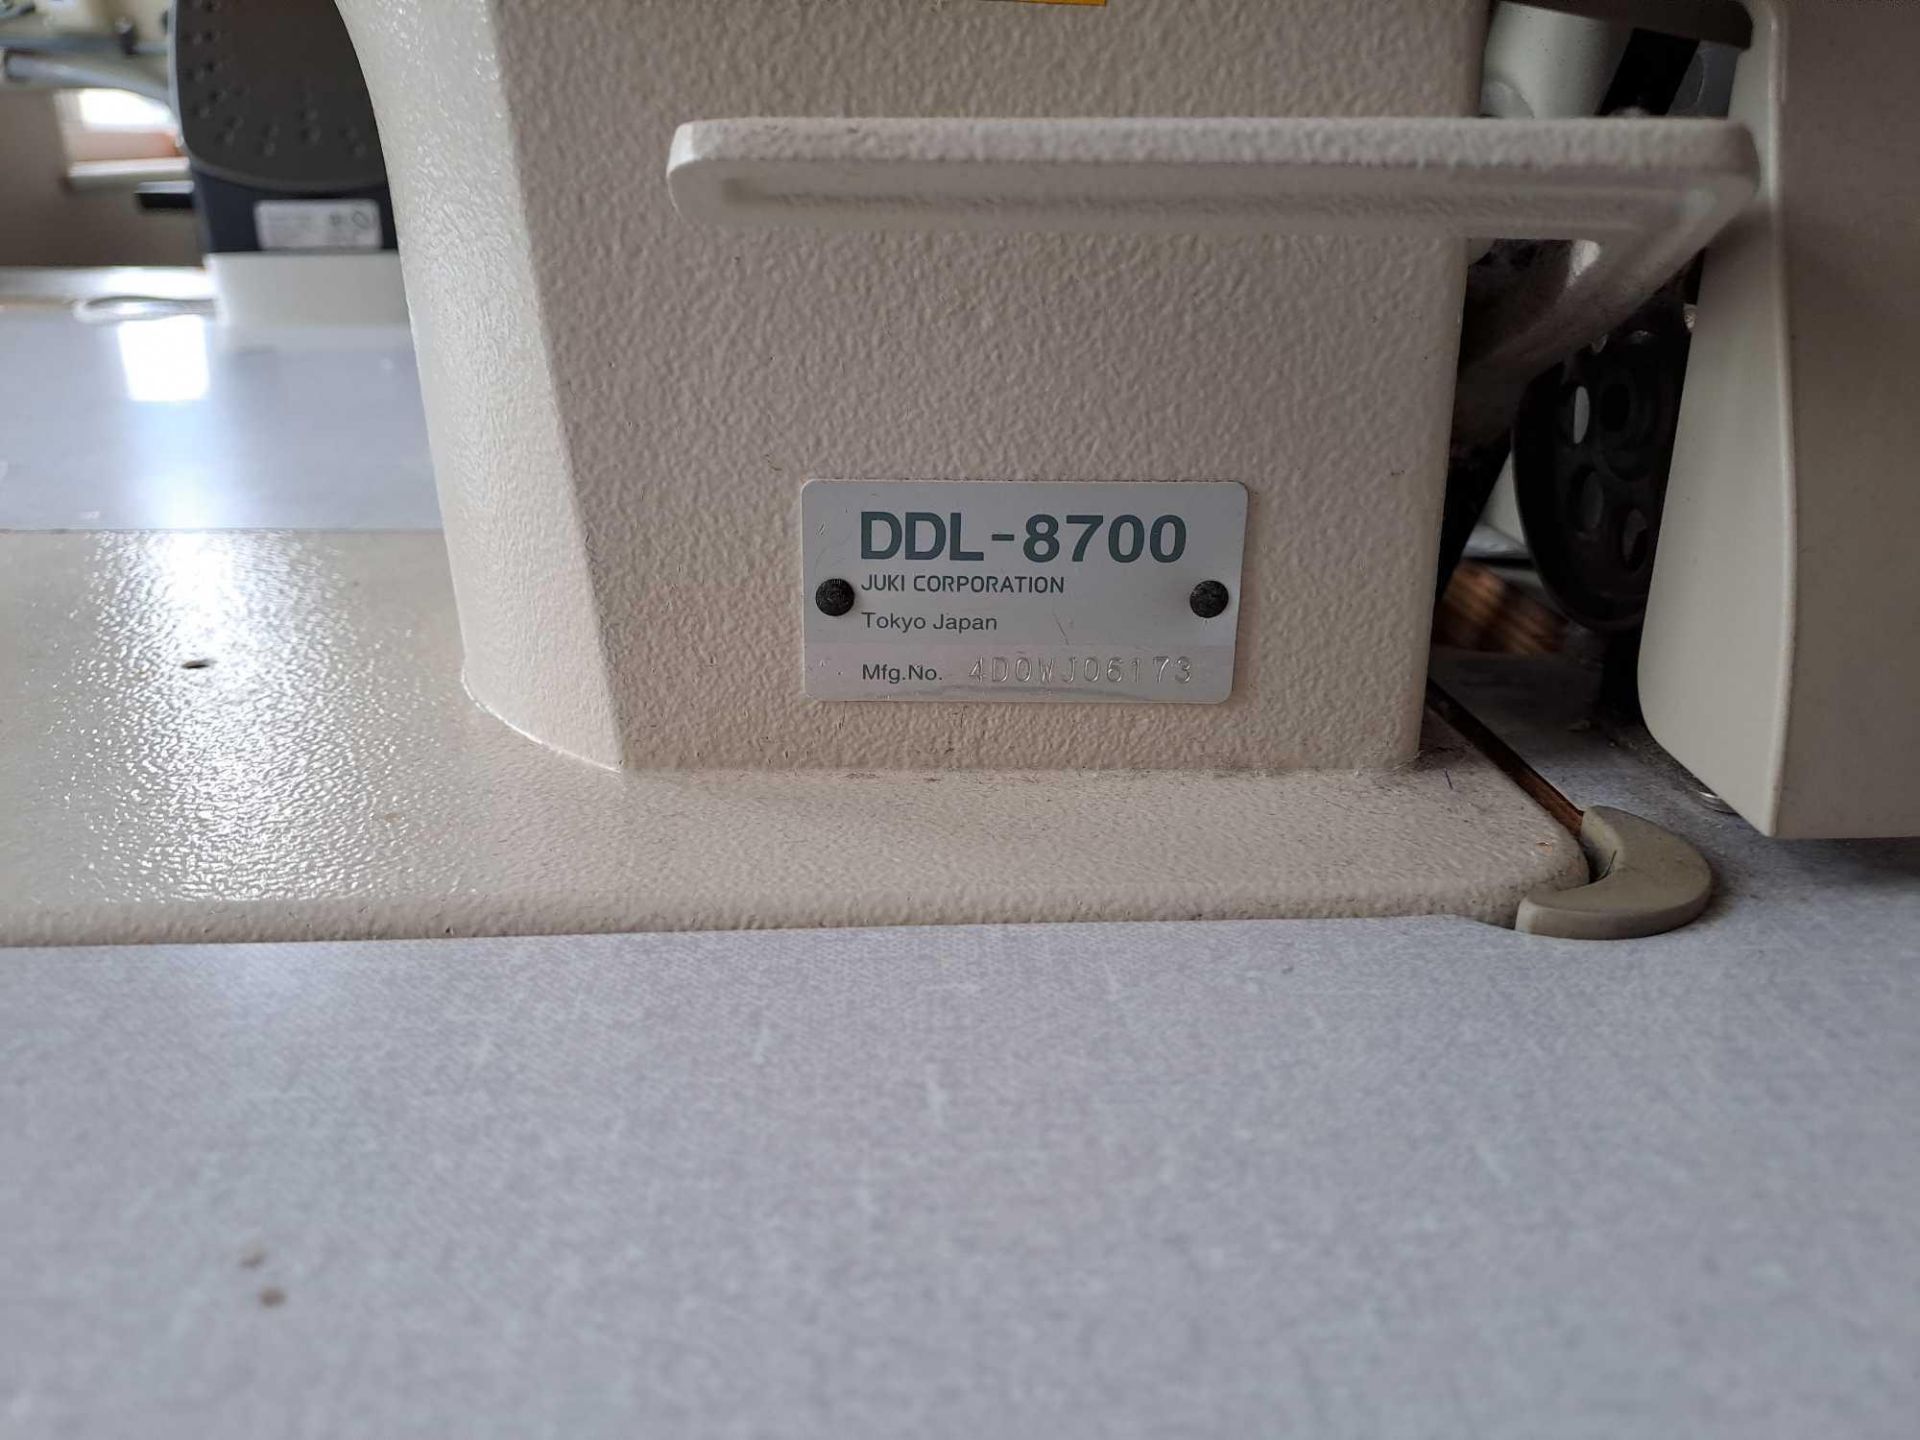 Juki DDL-8700 Sewing Machine - Image 2 of 4